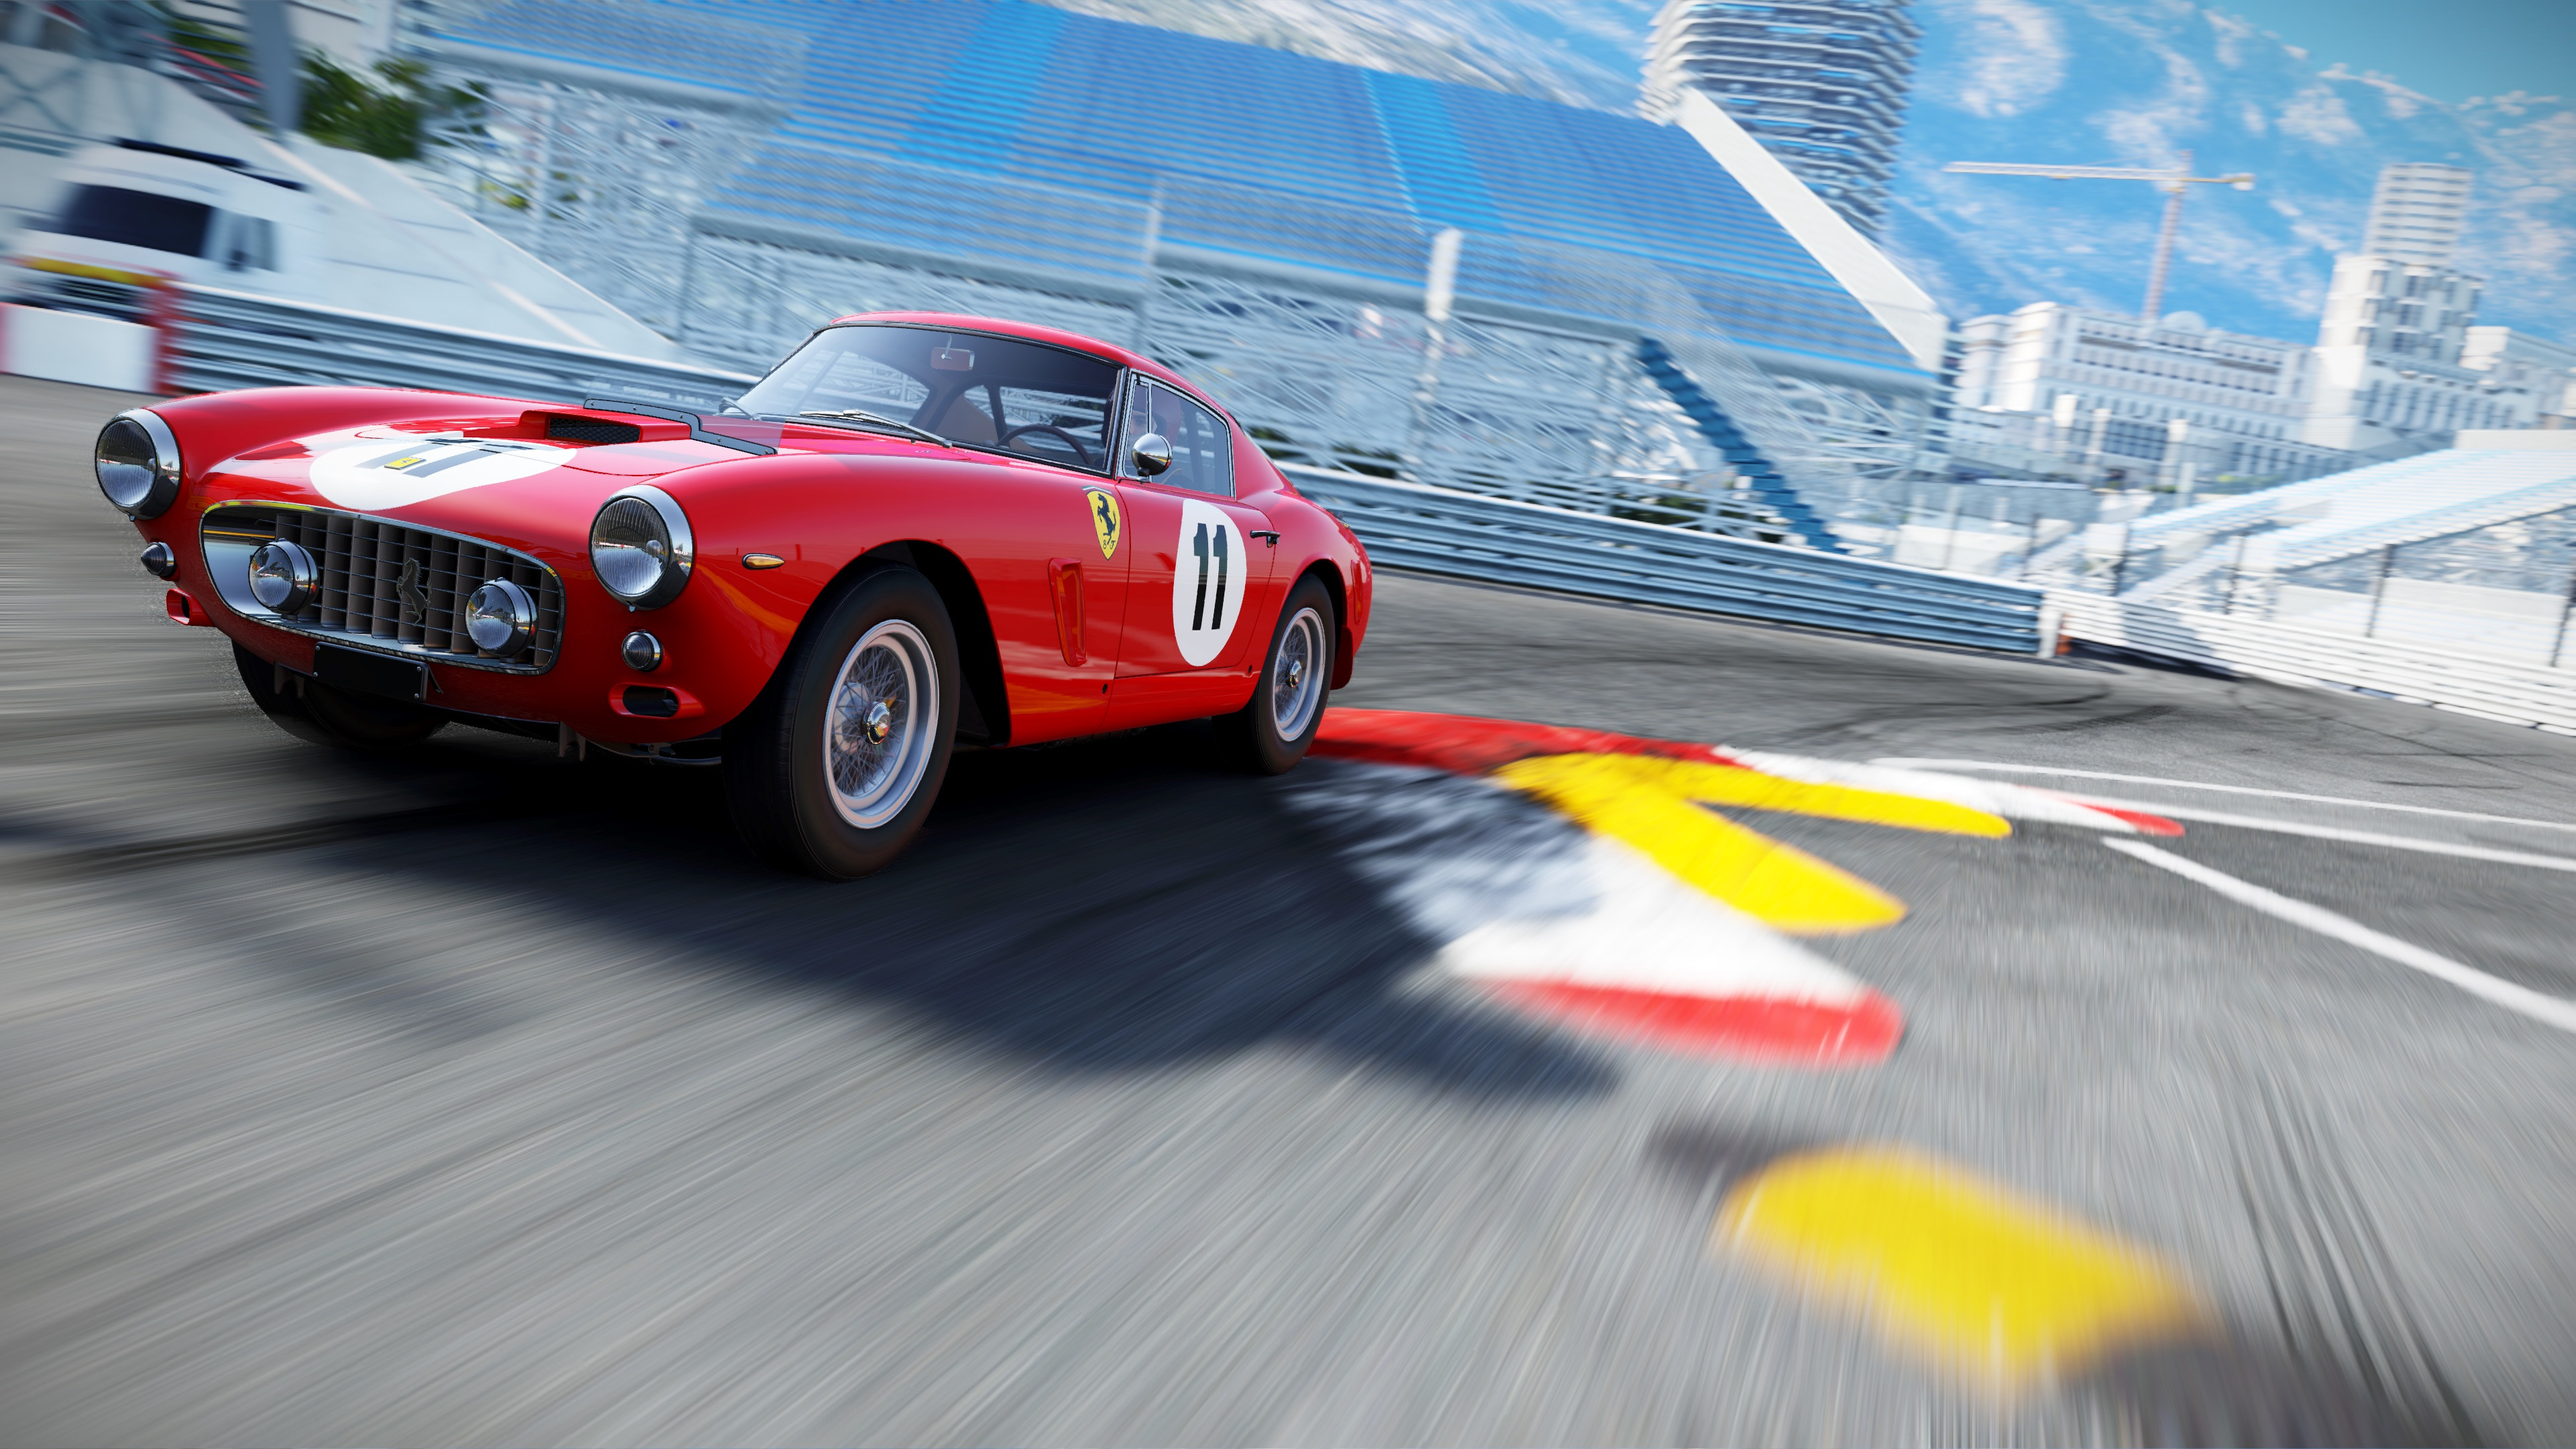 Project CARS 2 Ferrari Essentials Pack DLC